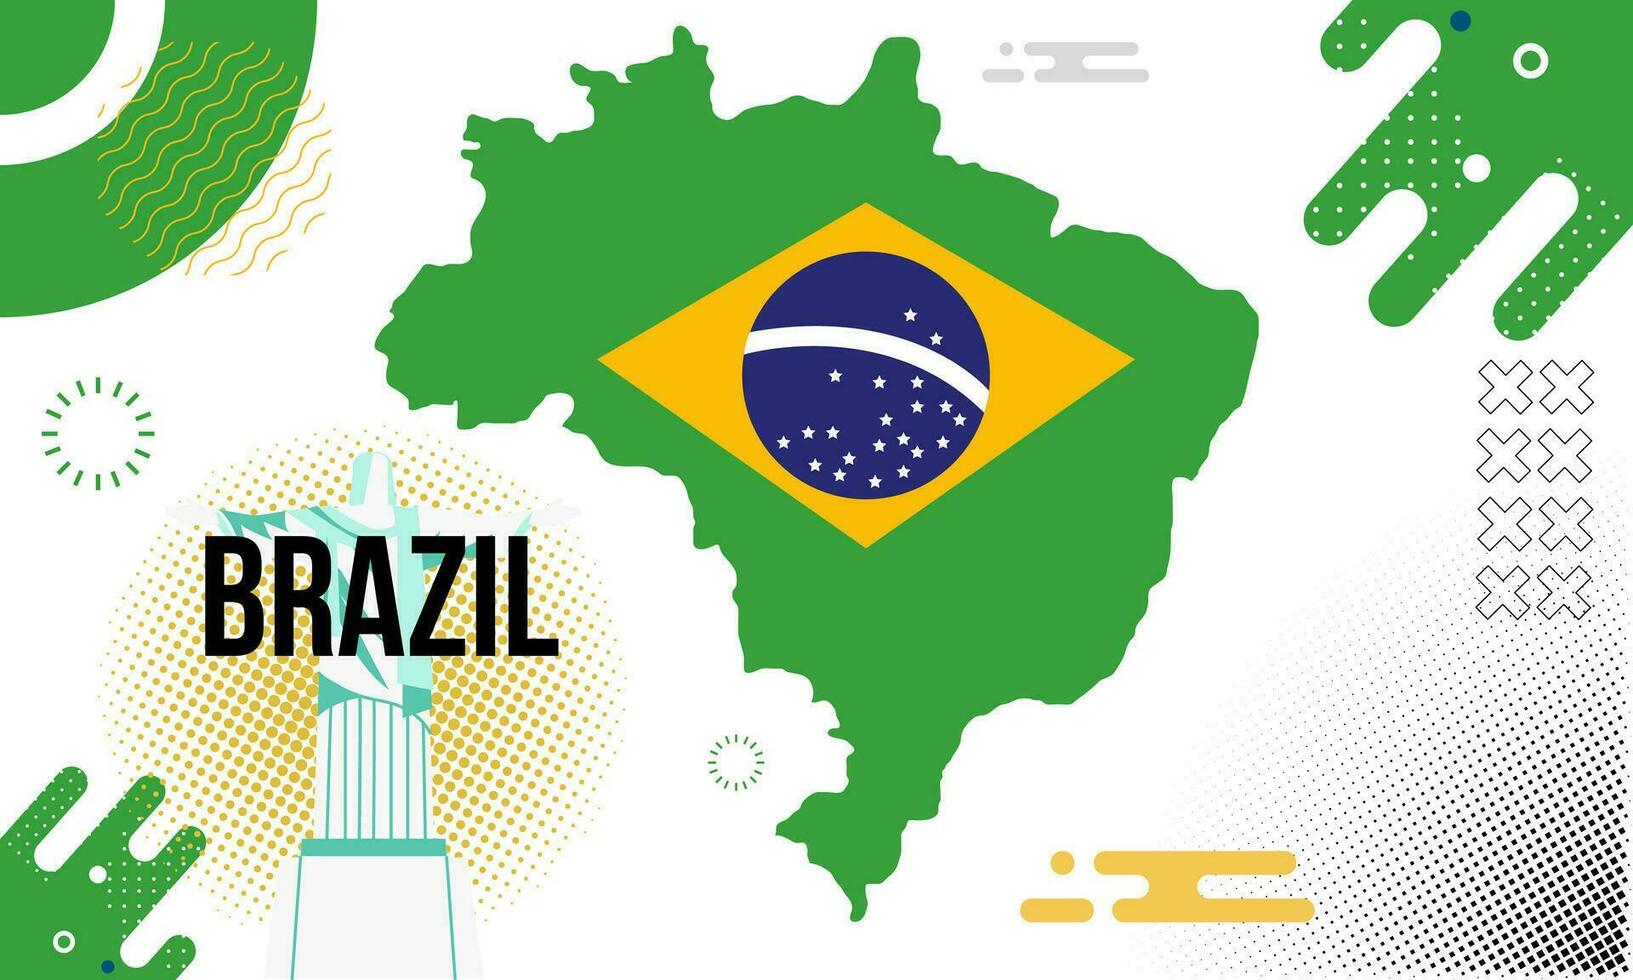 Brasil nacional día bandera con mapas y tipografía ilustración vector